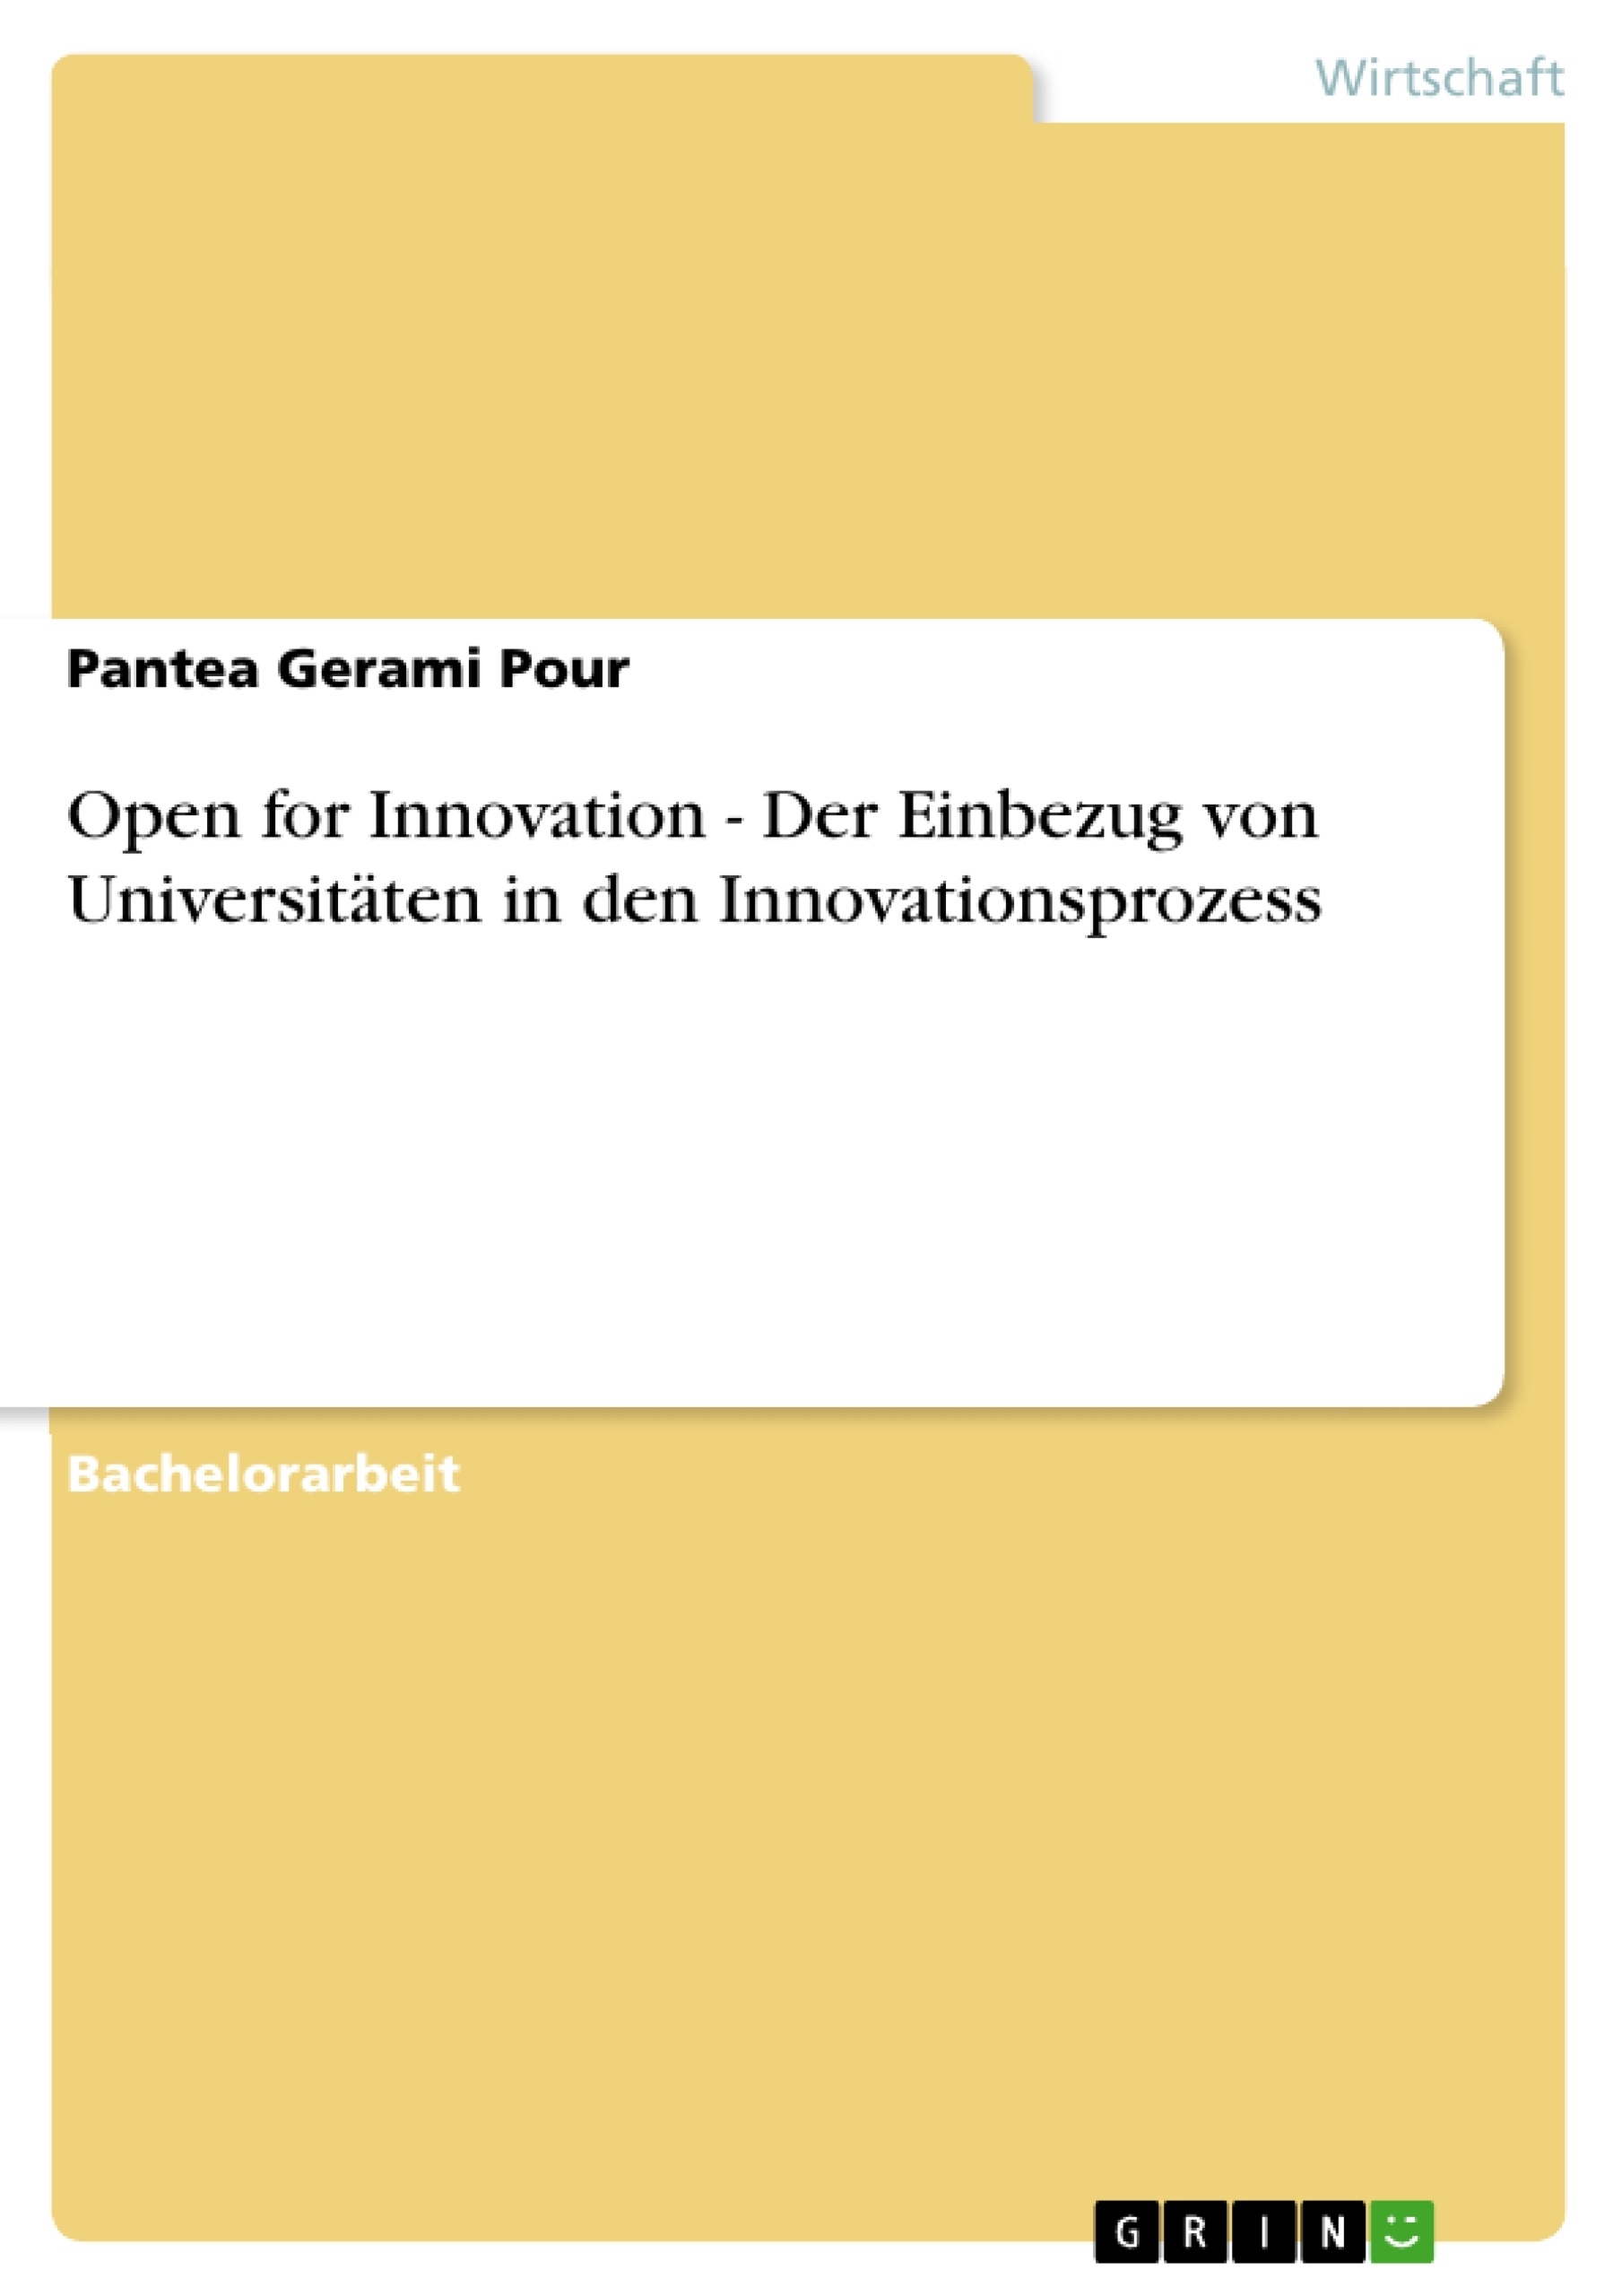 Título: Open for Innovation - Der Einbezug von Universitäten in den Innovationsprozess